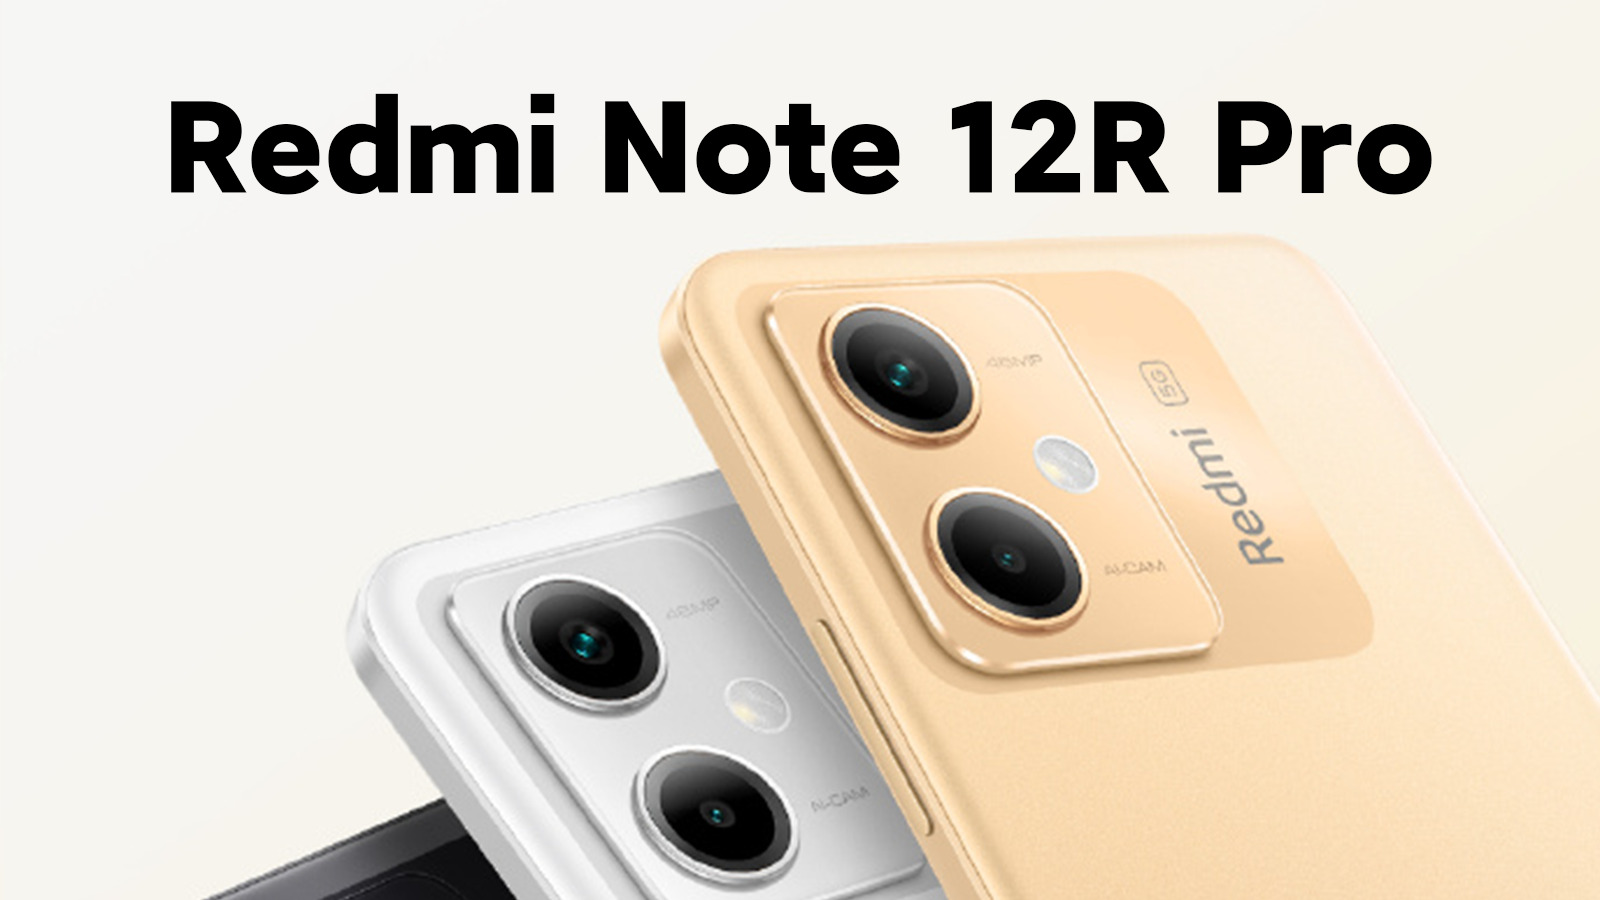 Snapdragon 4 Gen 1, pantalla de 120 Hz, 5000mAh y hasta 256GB de almacenamiento: reveladas las especificaciones oficiales del Redmi Note 12R Pro